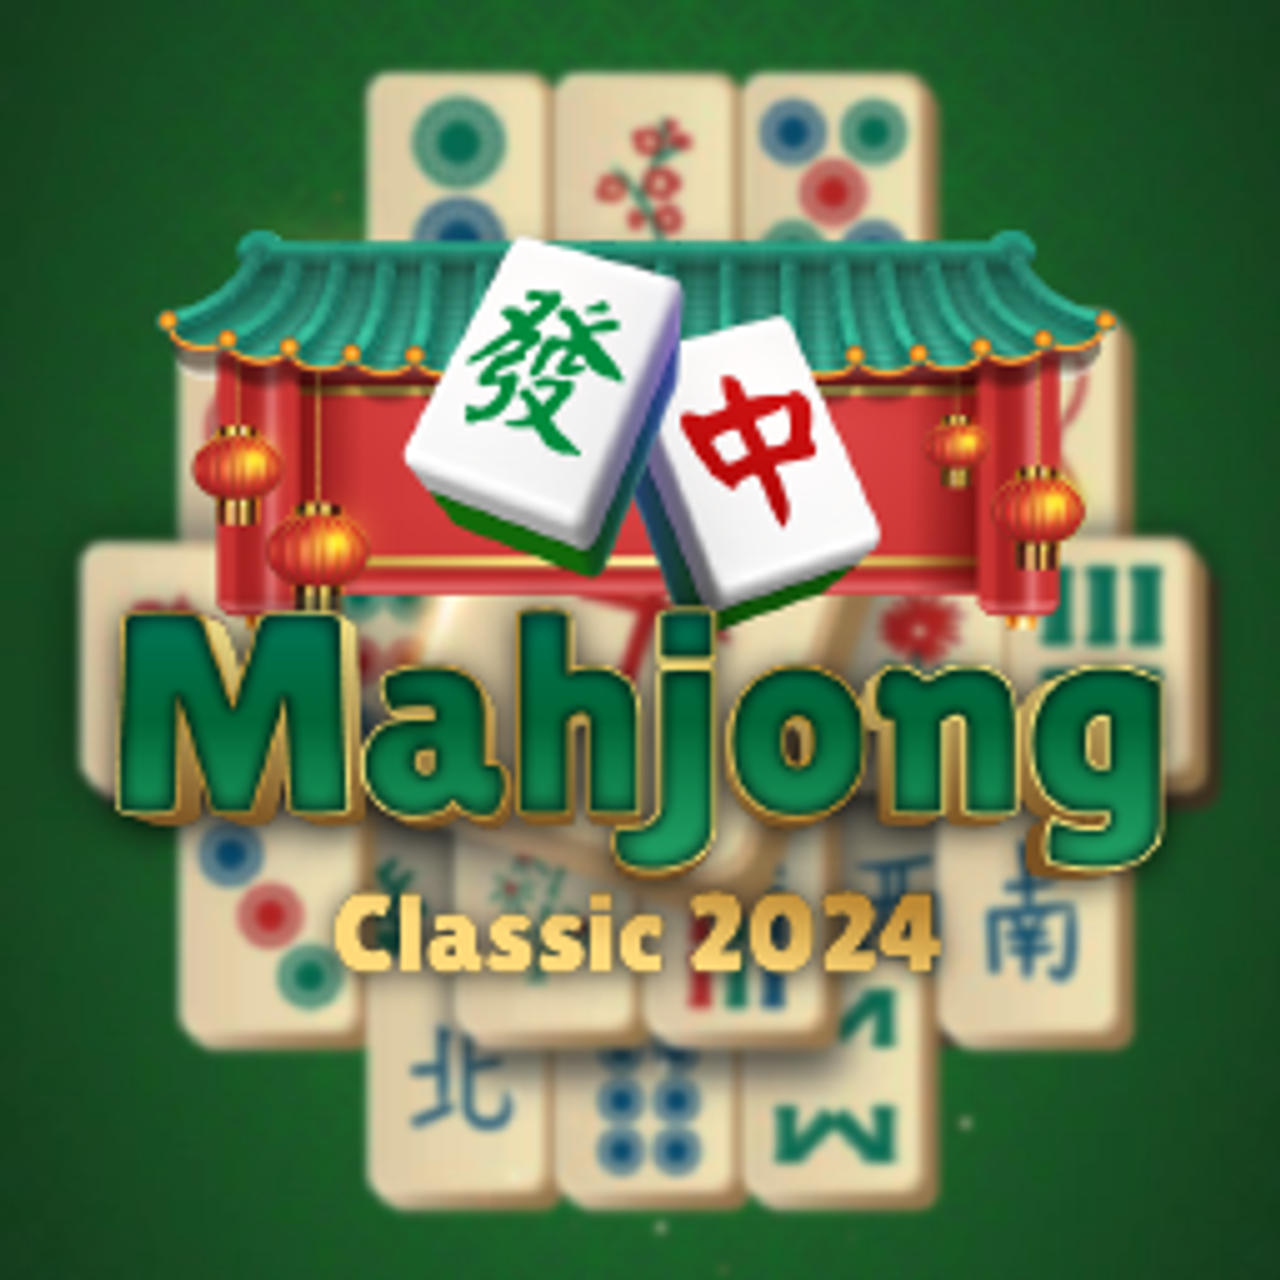 Classic Mahjong 2024